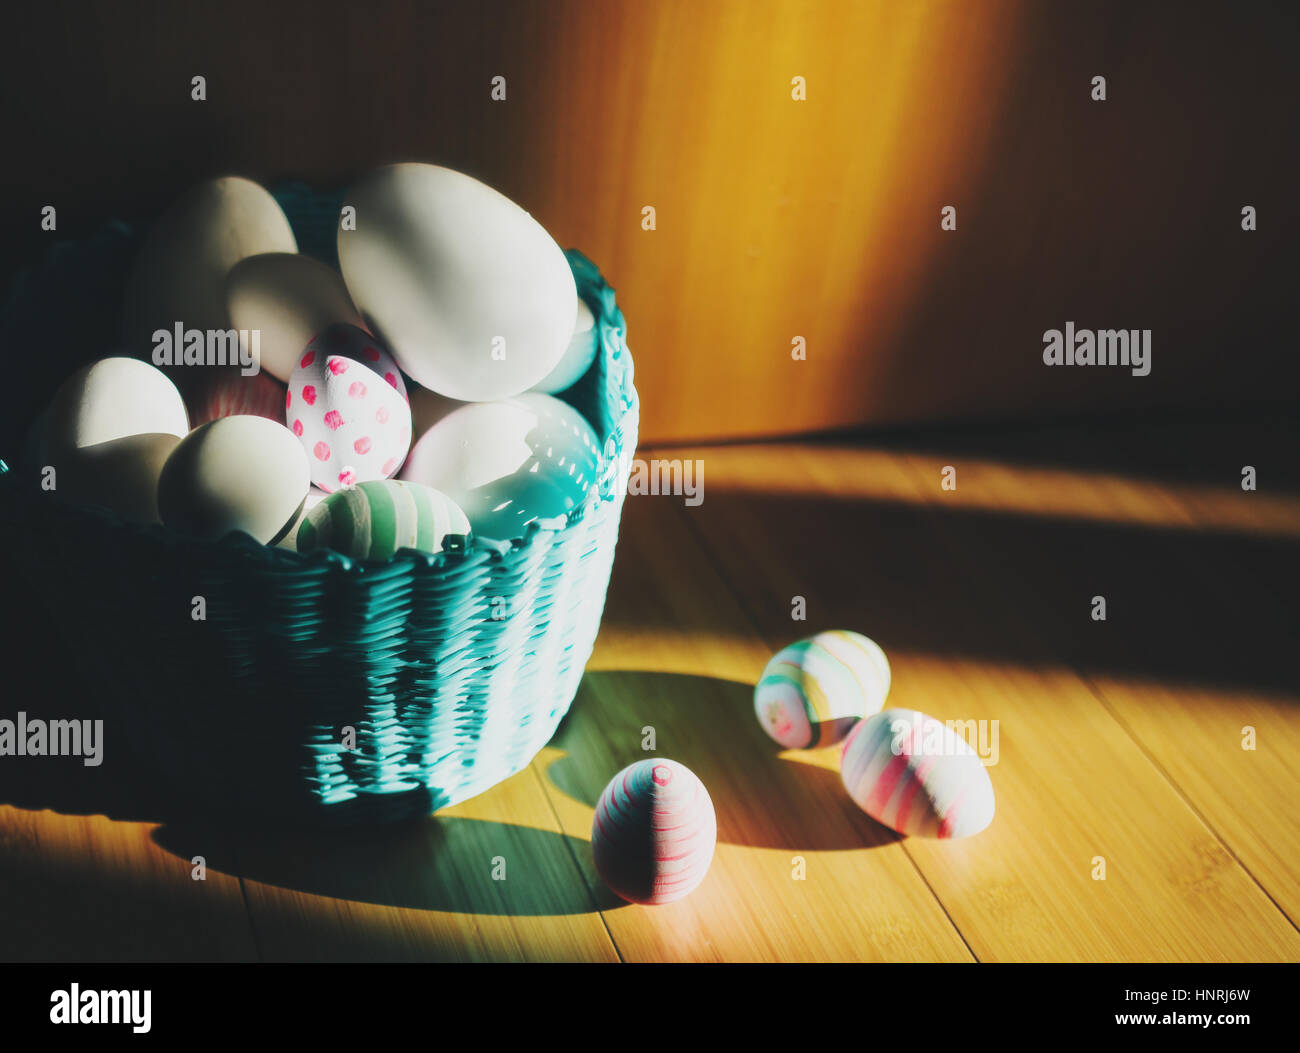 Osterkorb mit Eiern auf einem Holzfußboden Stockfoto